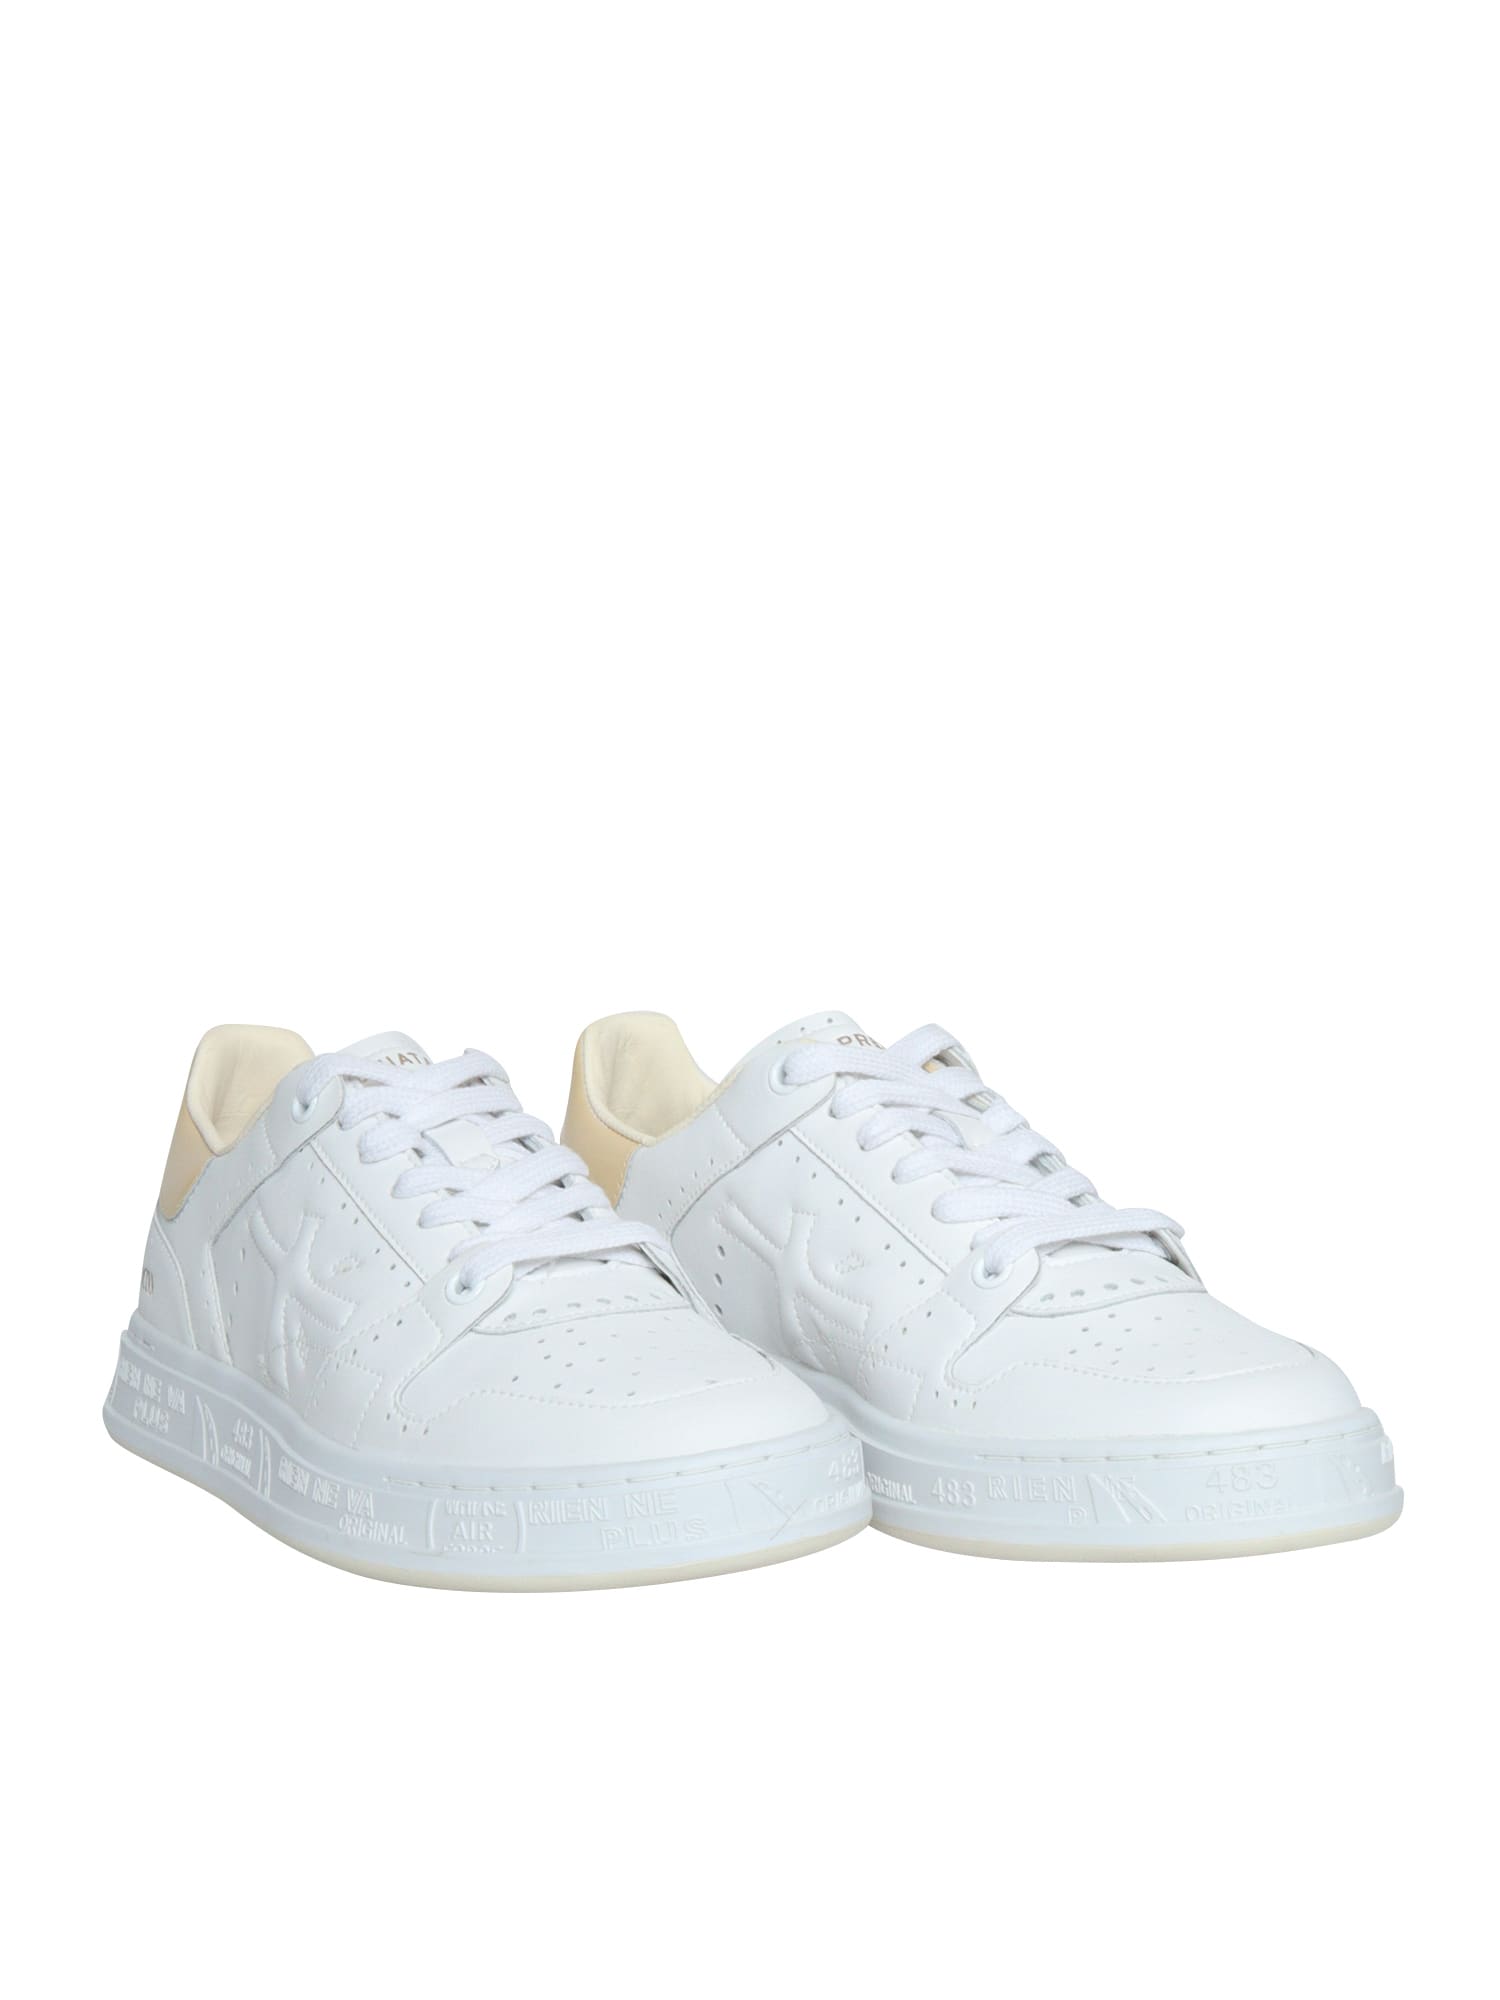 Shop Premiata White Quinnd Sneakers